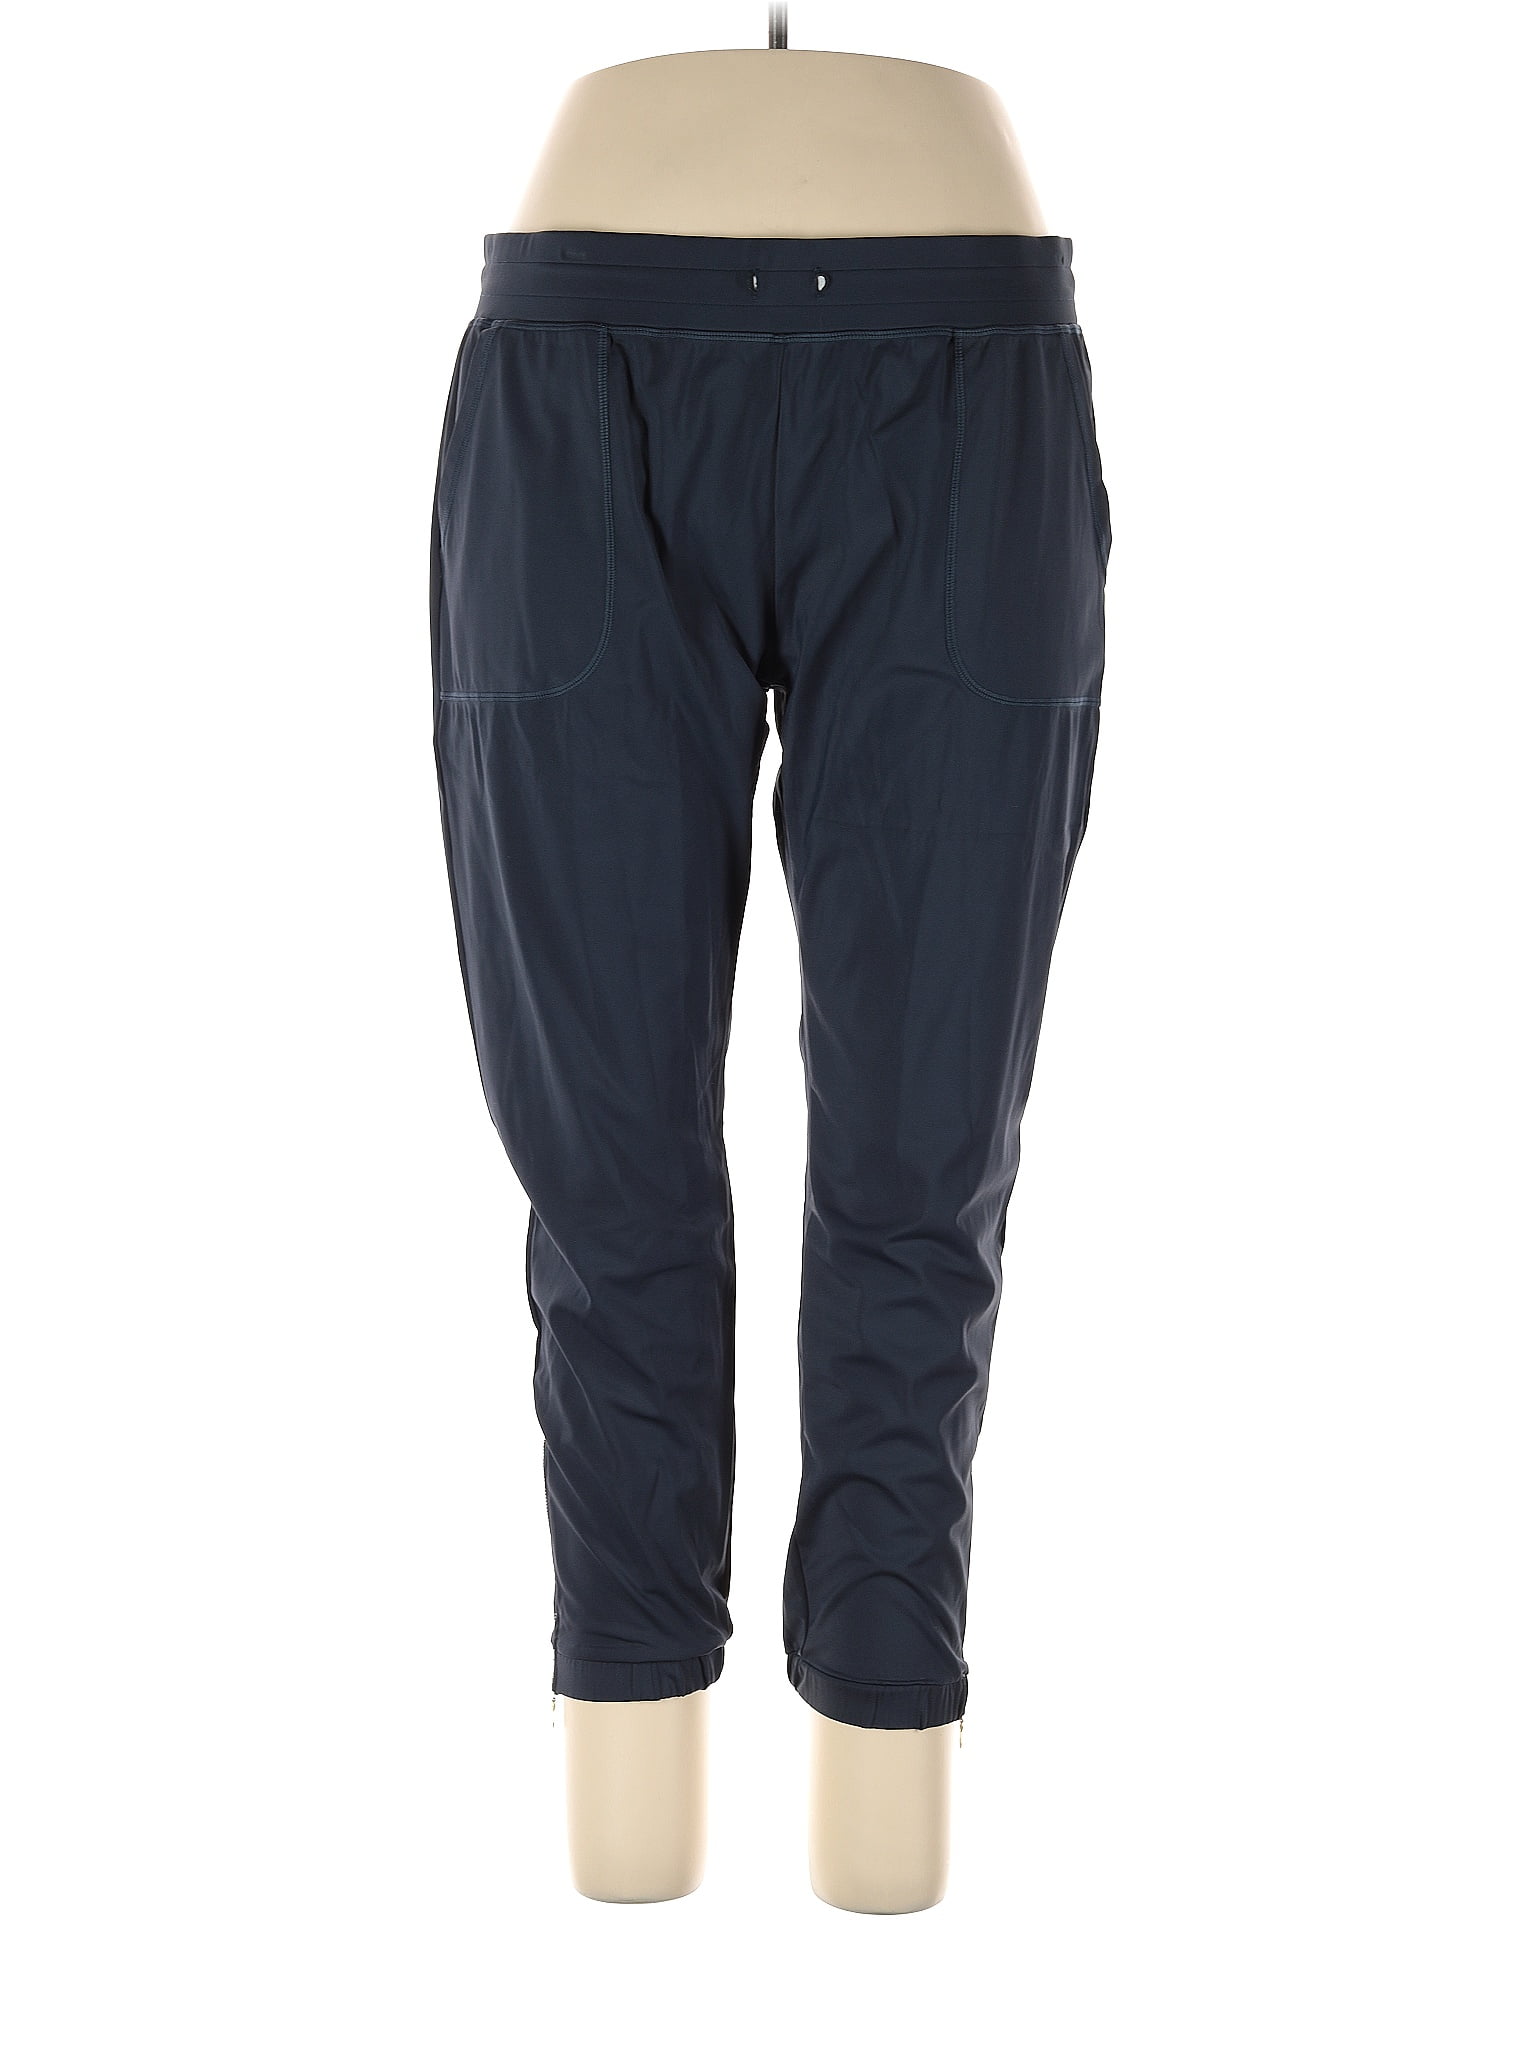 Danskin Blue Active Pants Size XL - 55% off